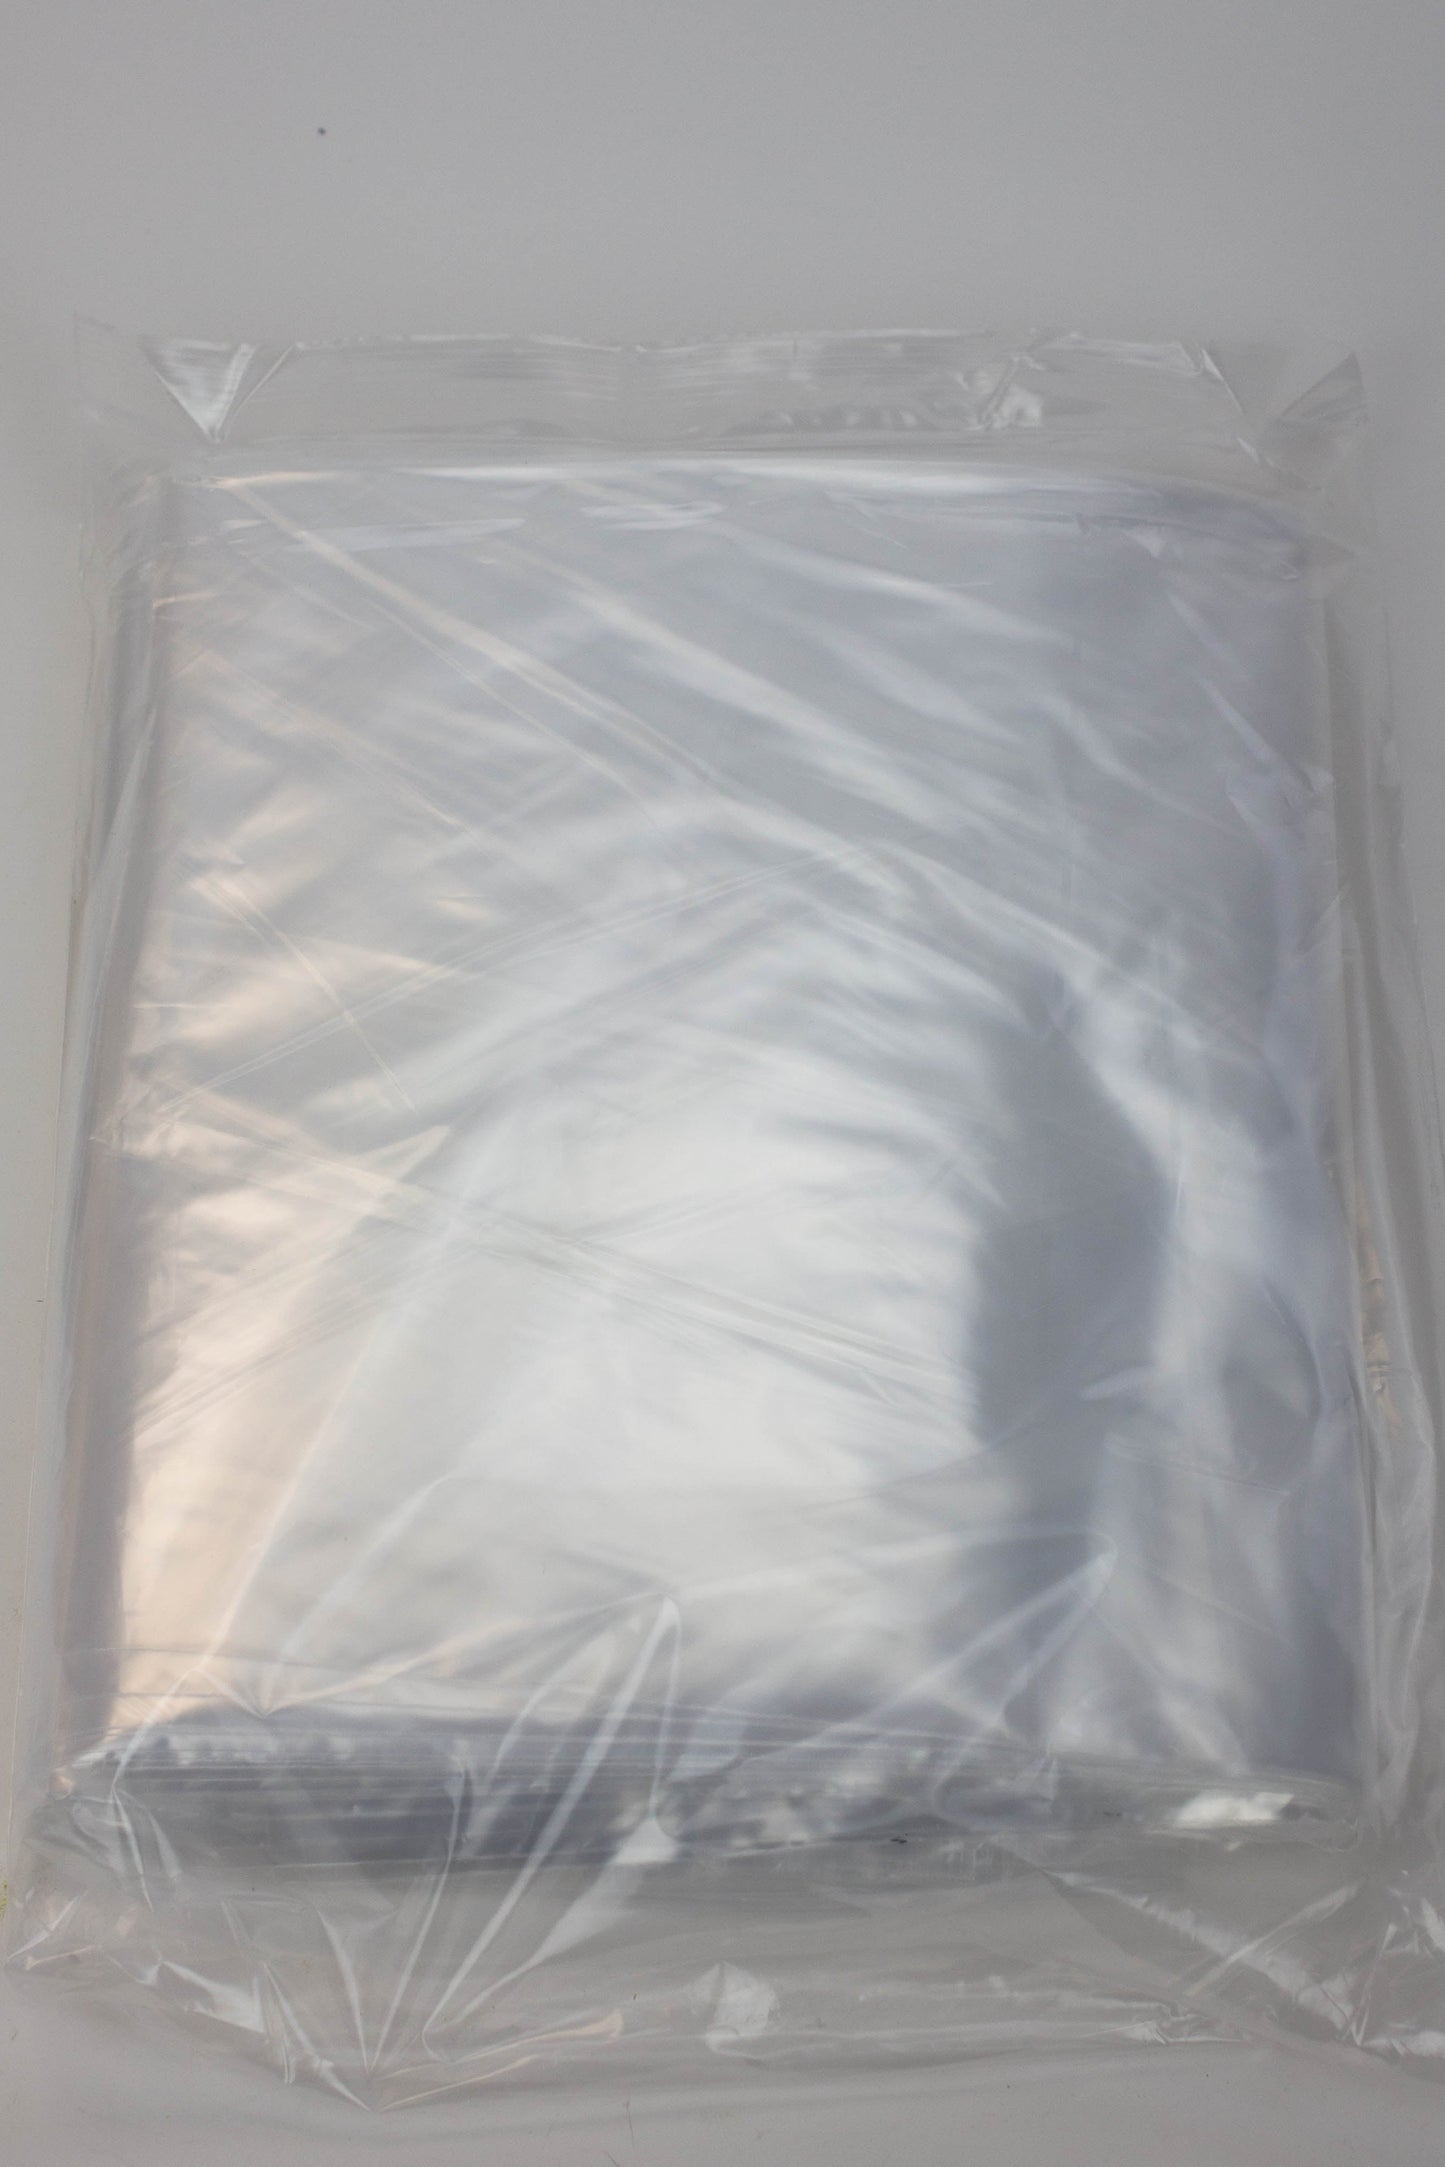 2 MIL Reclosable Zipper Bags_3